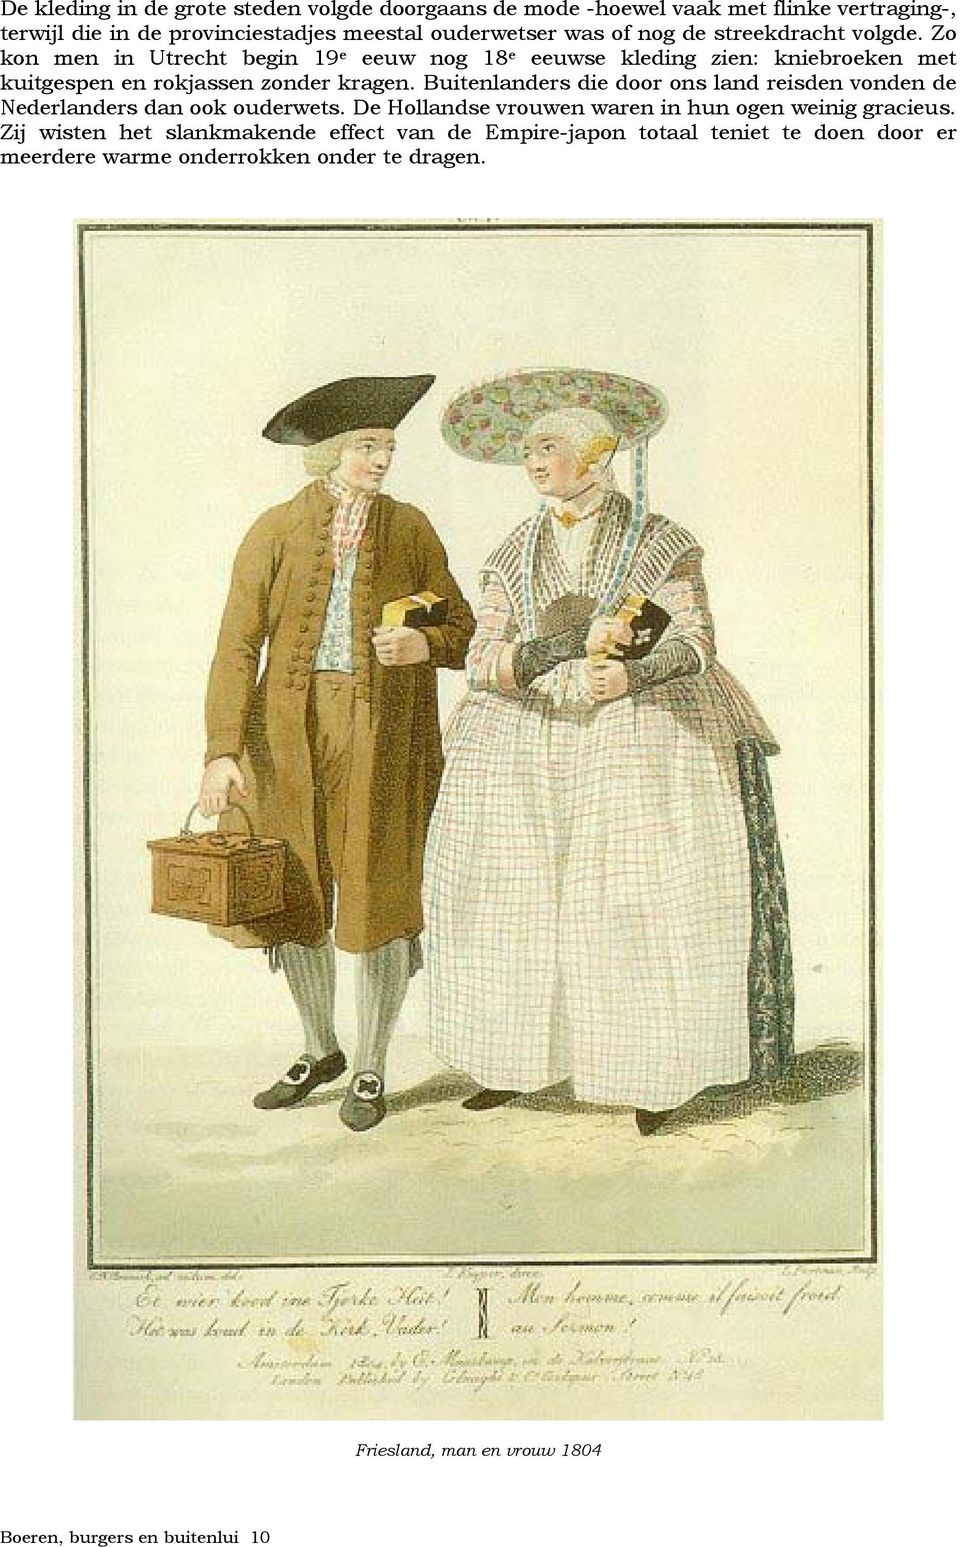 Buitenlanders die door ons land reisden vonden de Nederlanders dan ook ouderwets. De Hollandse vrouwen waren in hun ogen weinig gracieus.